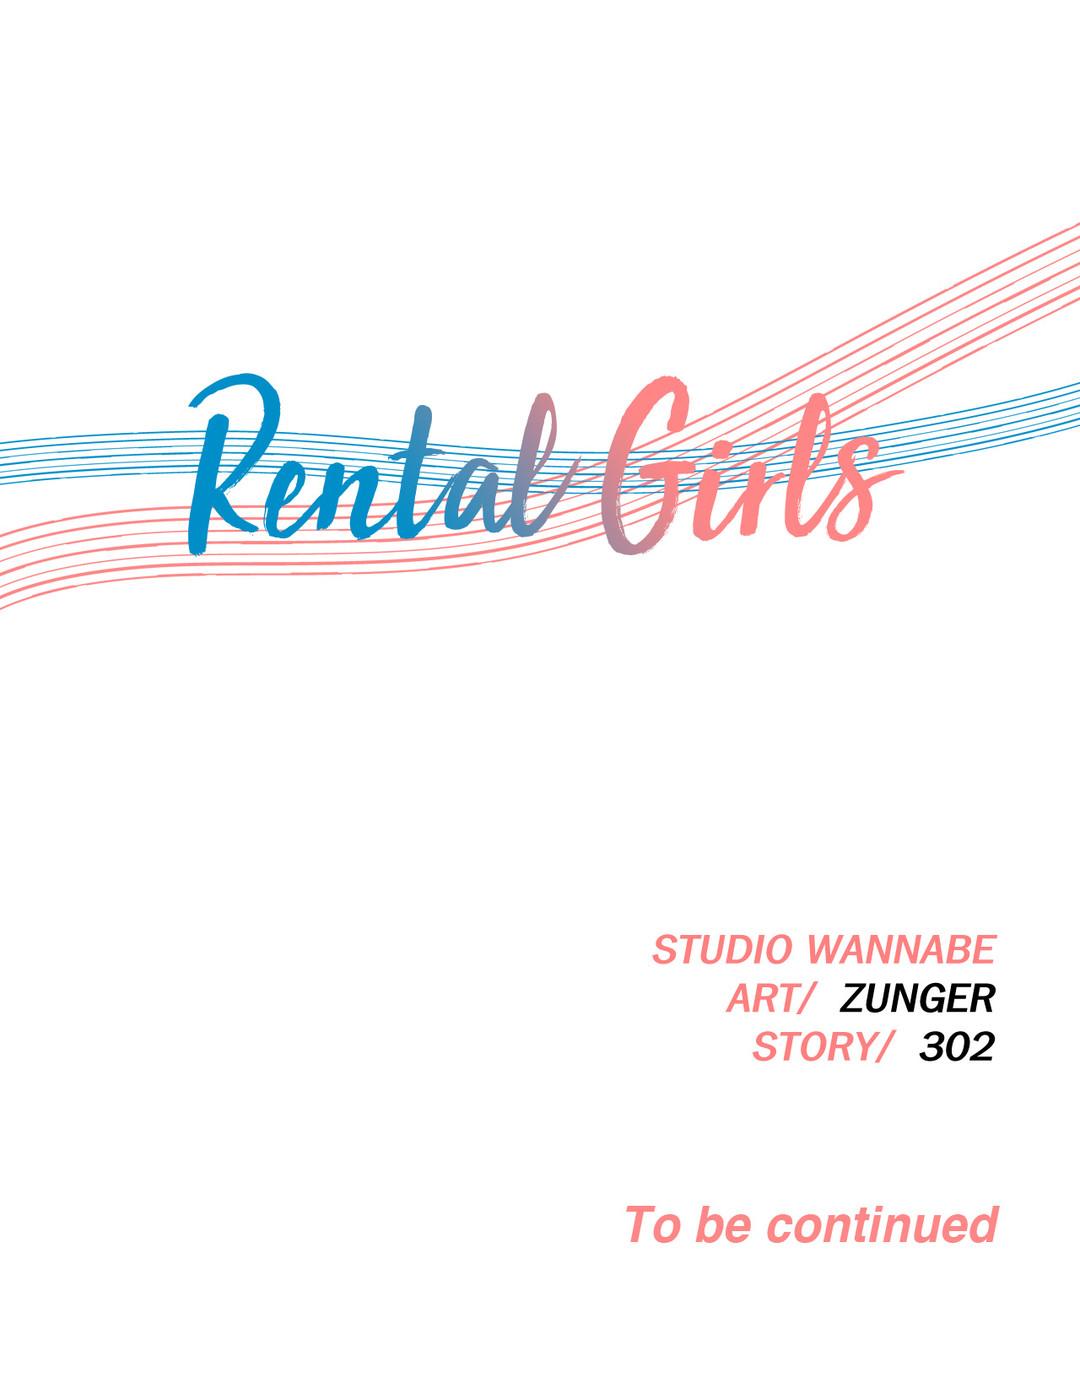 Rental Girls Ch 4 - 11 27